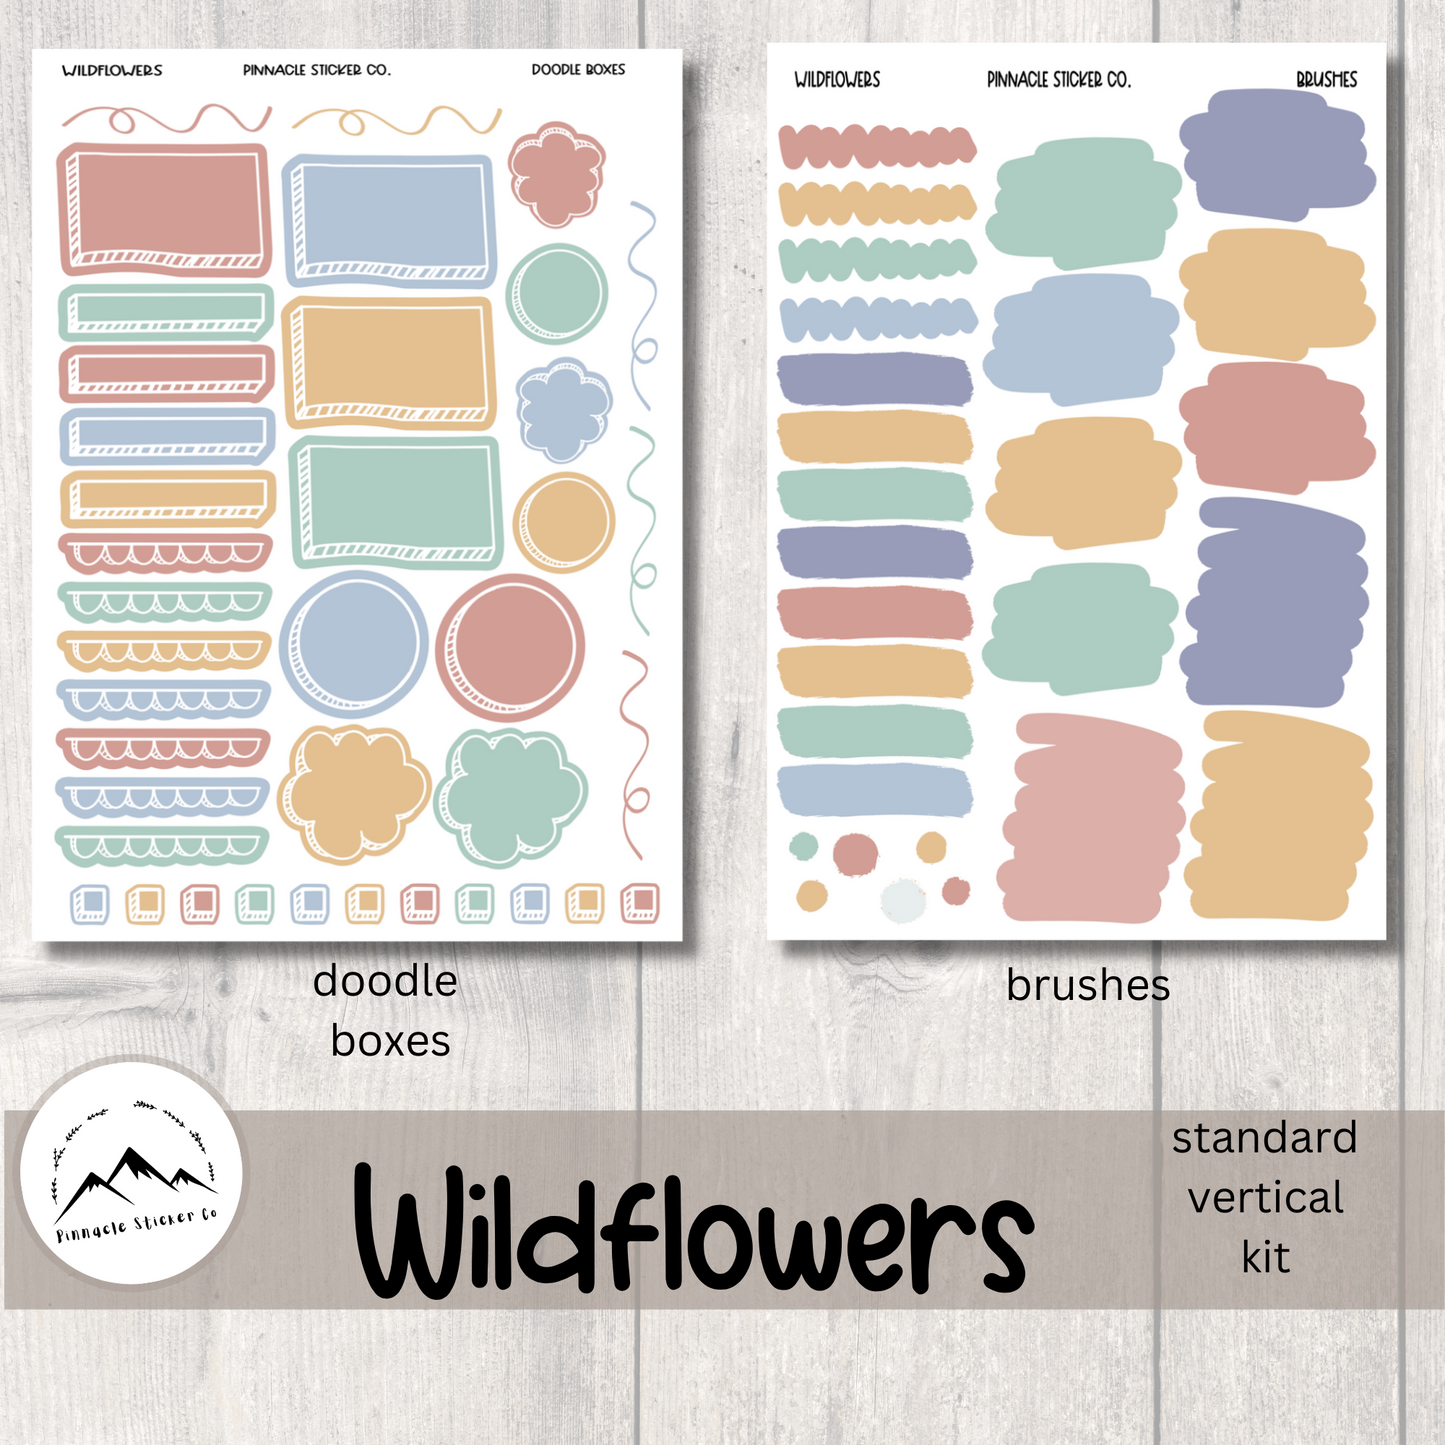 Wildflowers Weekly Kit Planner Stickers